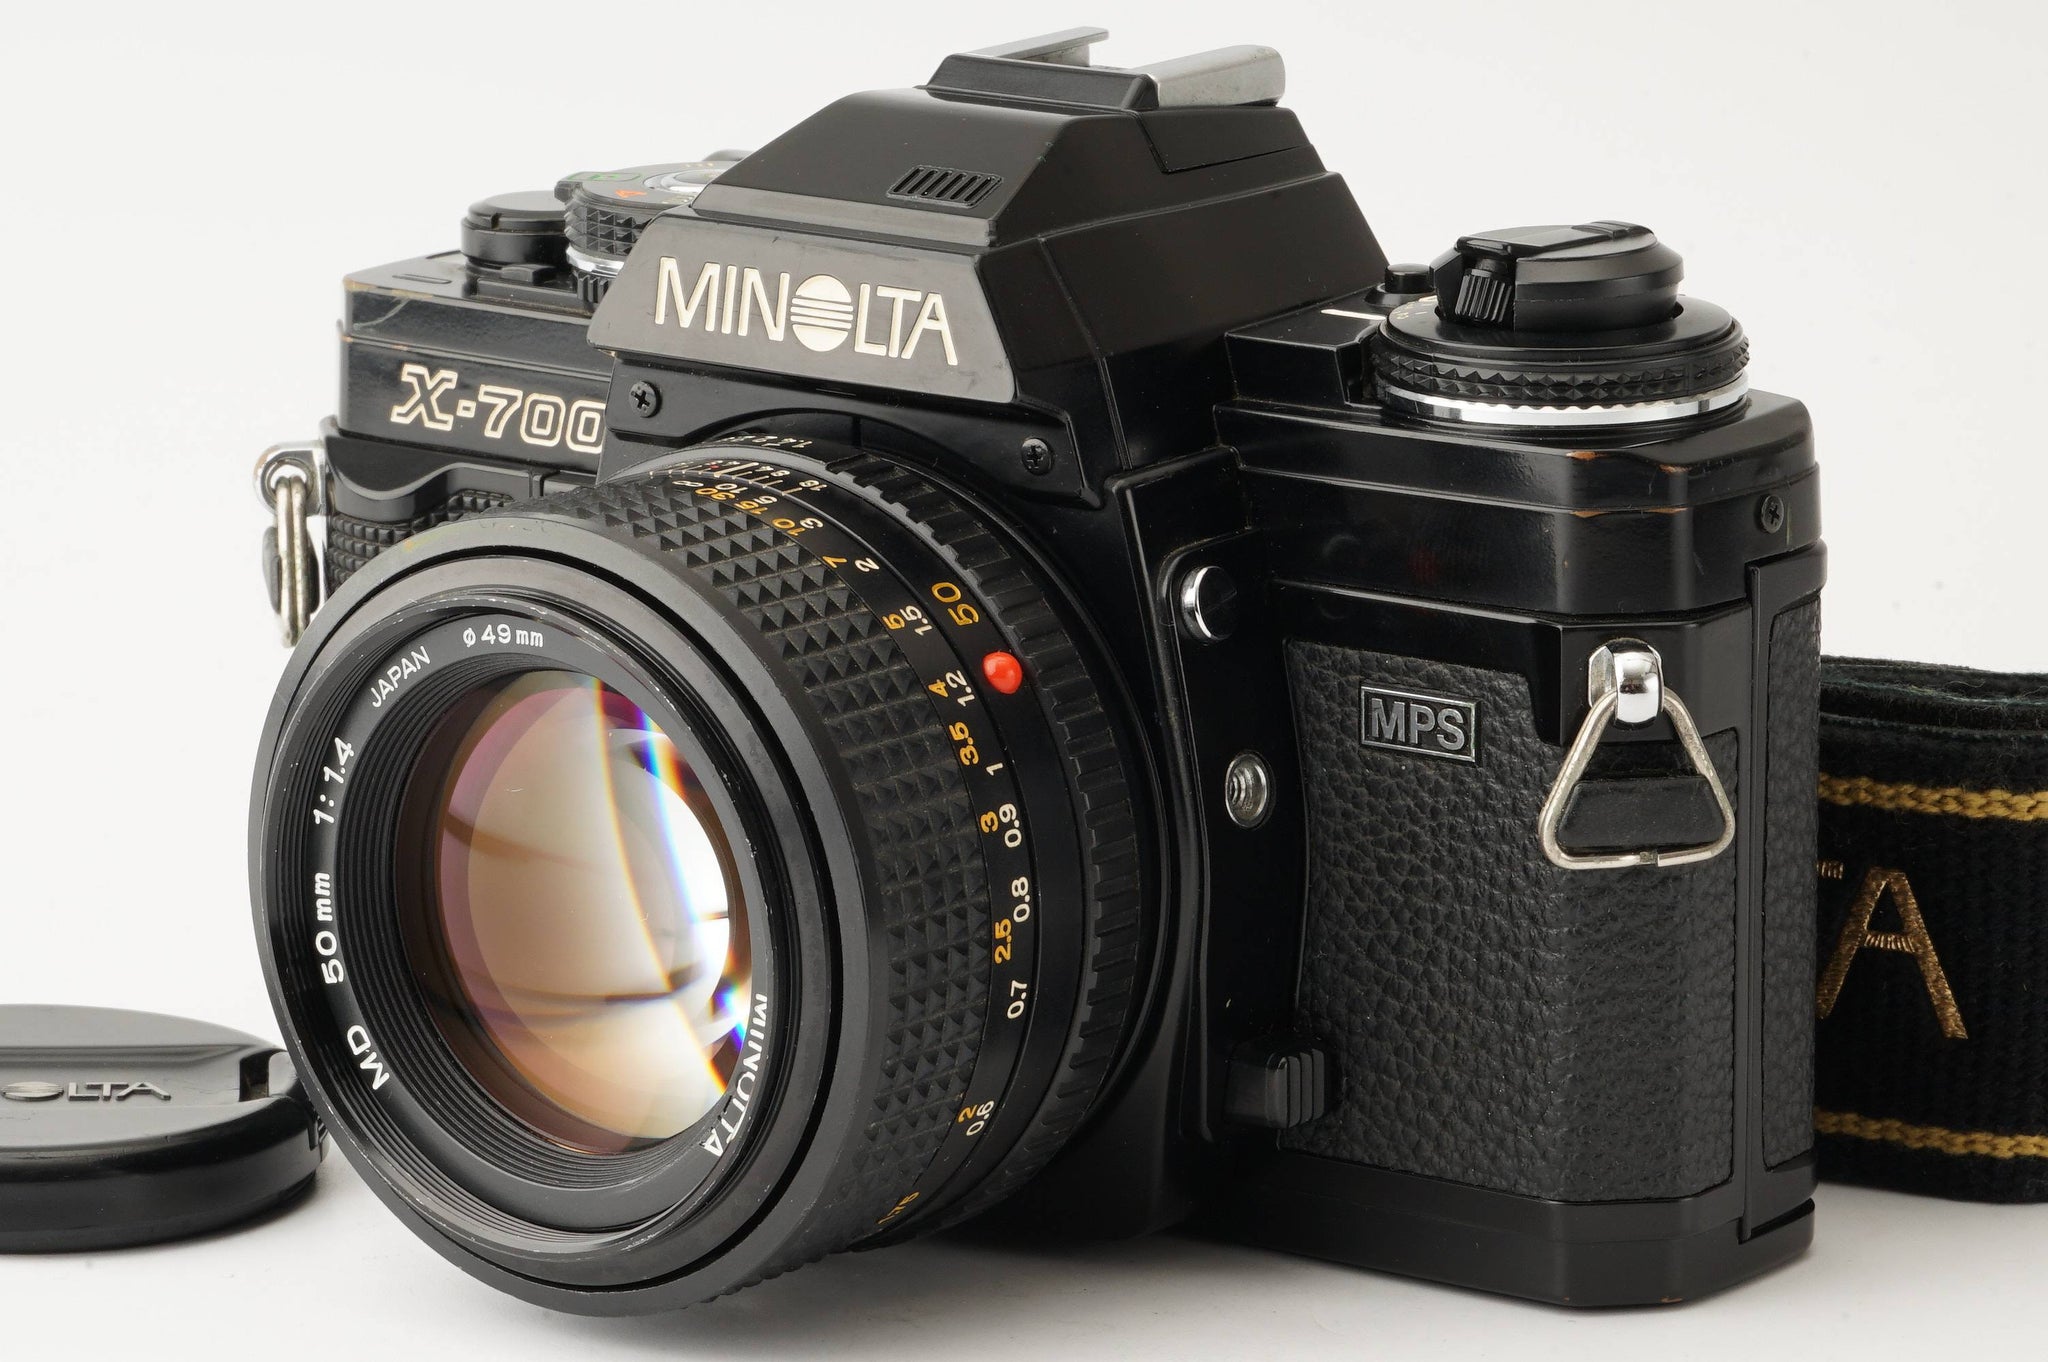 MINOLTA ミノルタ New X-700 ボディ フィルムカメラ - フィルムカメラ